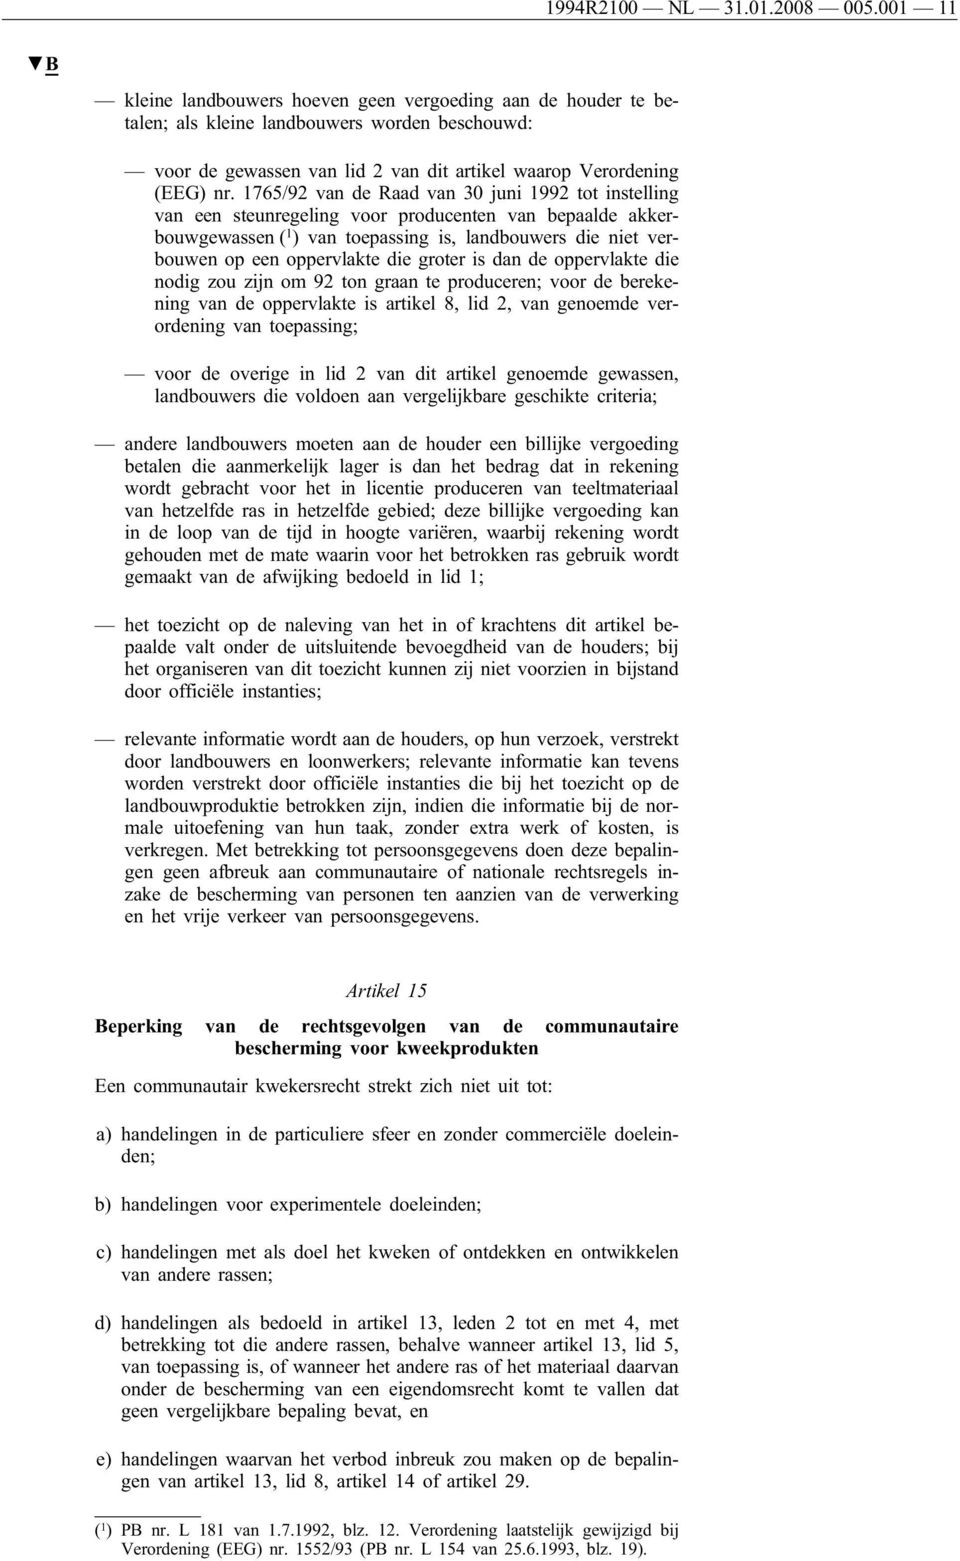 1765/92 van de Raad van 30 juni 1992 tot instelling van een steunregeling voor producenten van bepaalde akkerbouwgewassen ( 1 ) van toepassing is, landbouwers die niet verbouwen op een oppervlakte